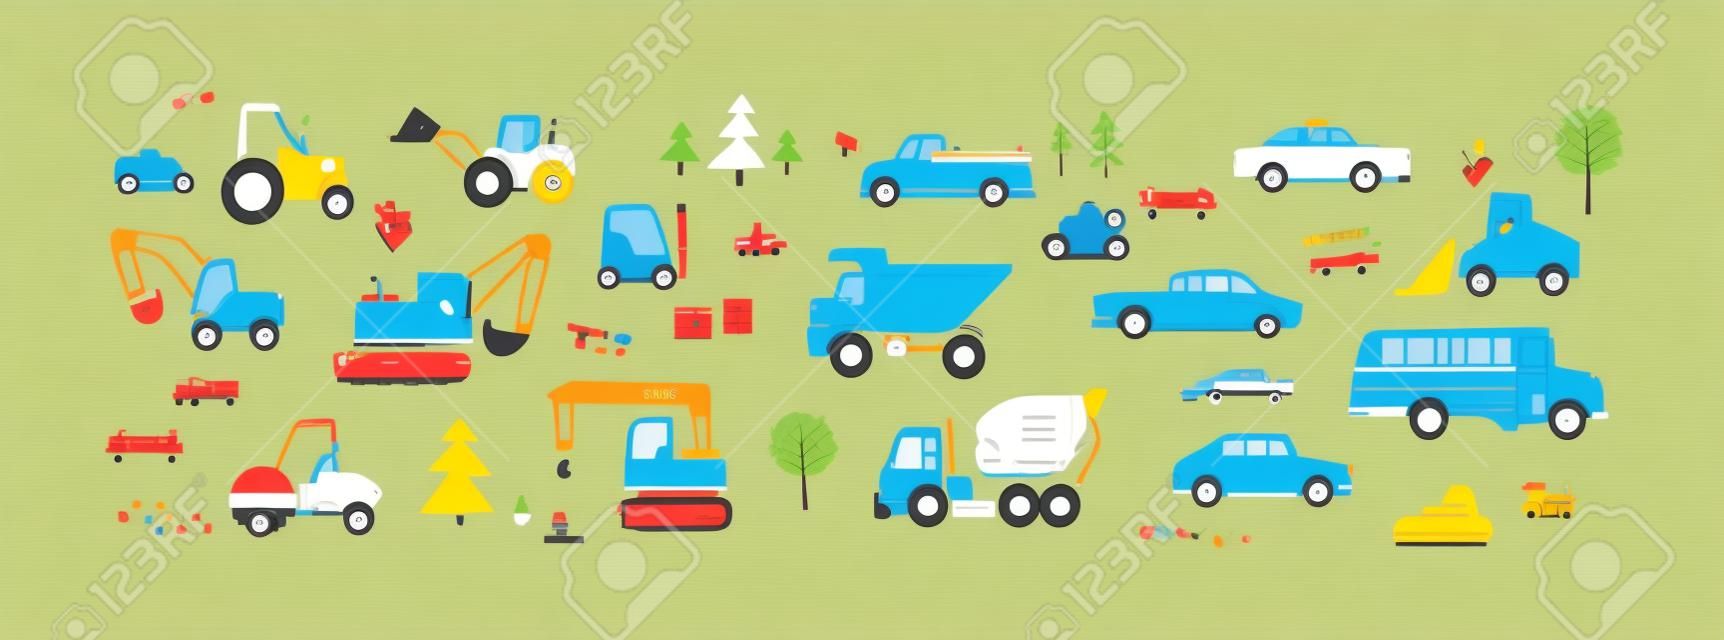 Śliczne samochody w stylu skandynawskim. dziecinny zestaw zabawek do transportu drogowego. traktor, autobus, wywrotka, koparka, wózek widłowy, taksówka i pickup. kolorowe płaskie ilustracje wektorowe izolowane na białym tle